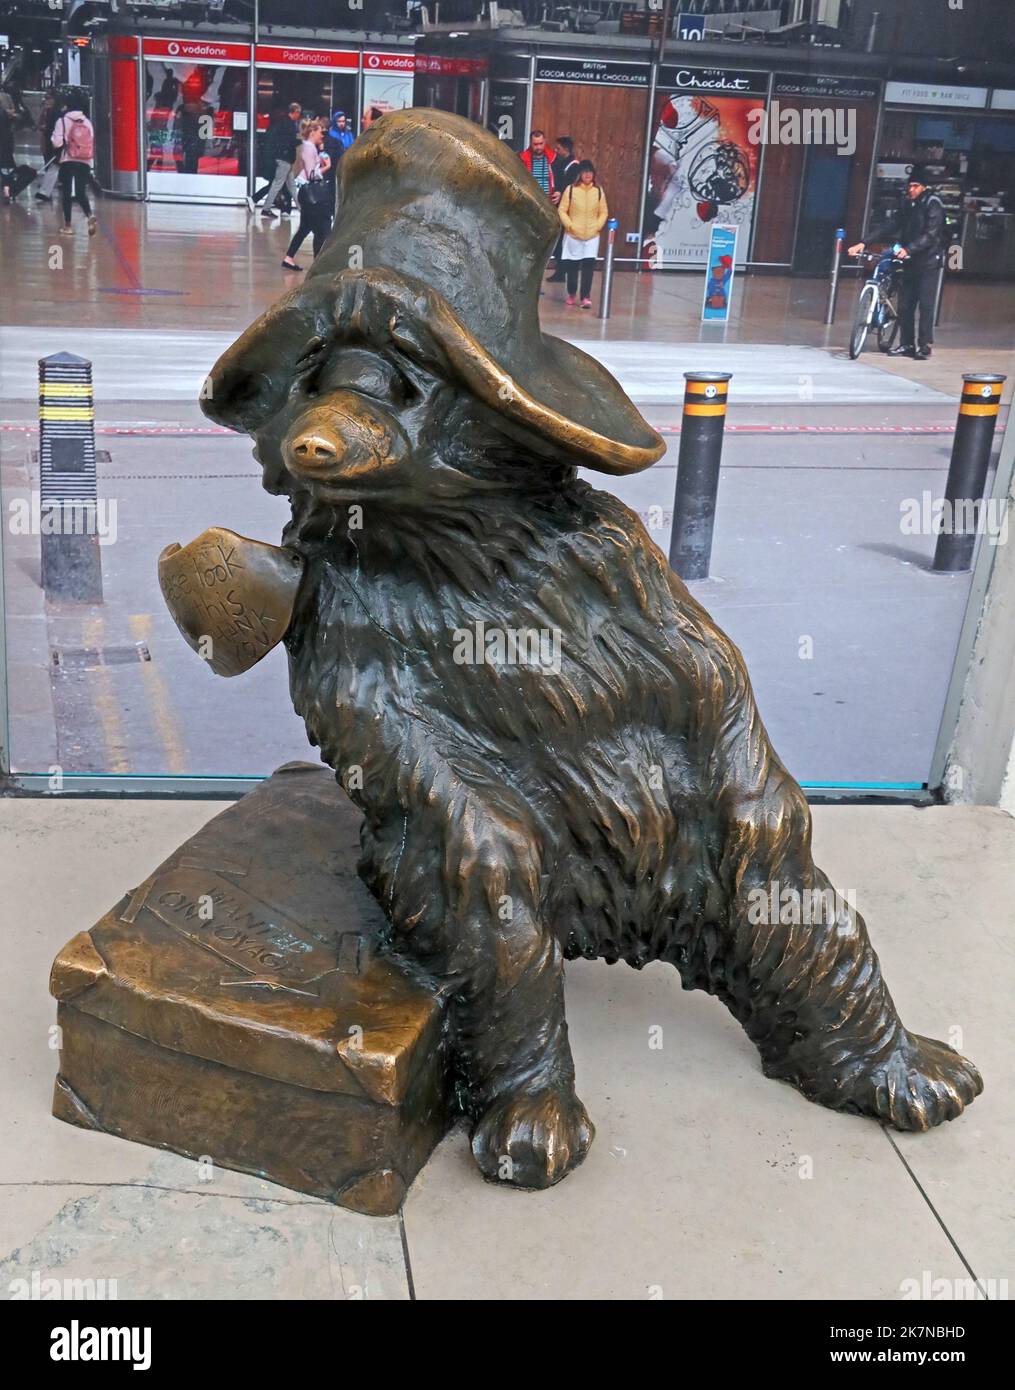 La famosa statua dell'Orso di Paddington, presso la stazione ferroviaria principale di Paddington, Bayswater, Londra, Inghilterra, Regno Unito Foto Stock